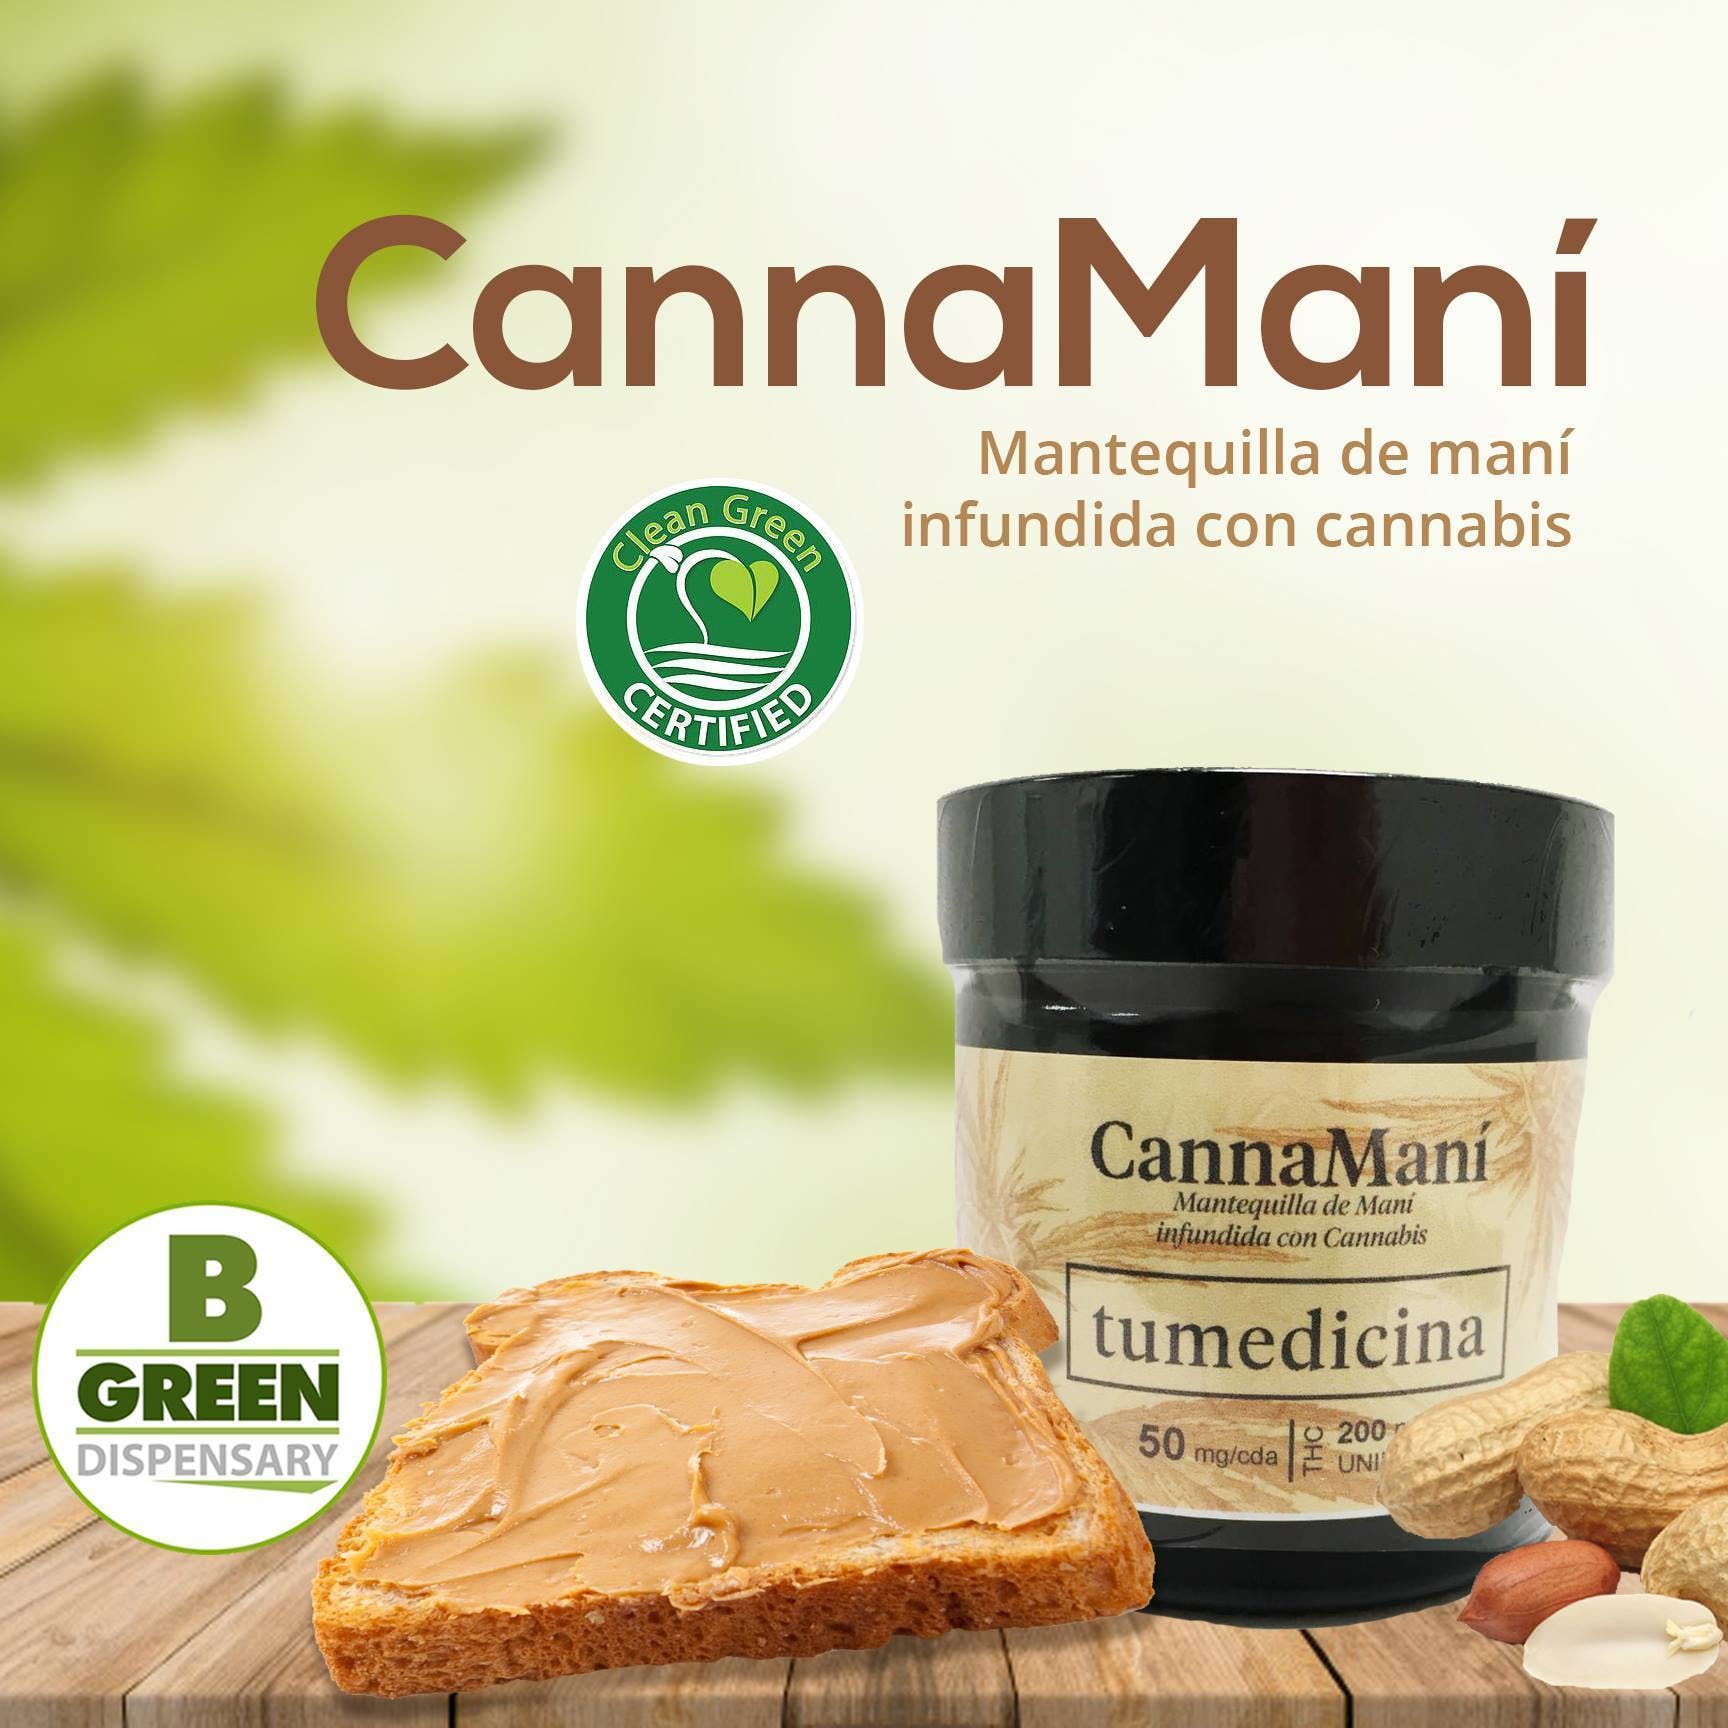 marijuana-dispensaries-bgreen-dispensary-in-yauco-canna-manas